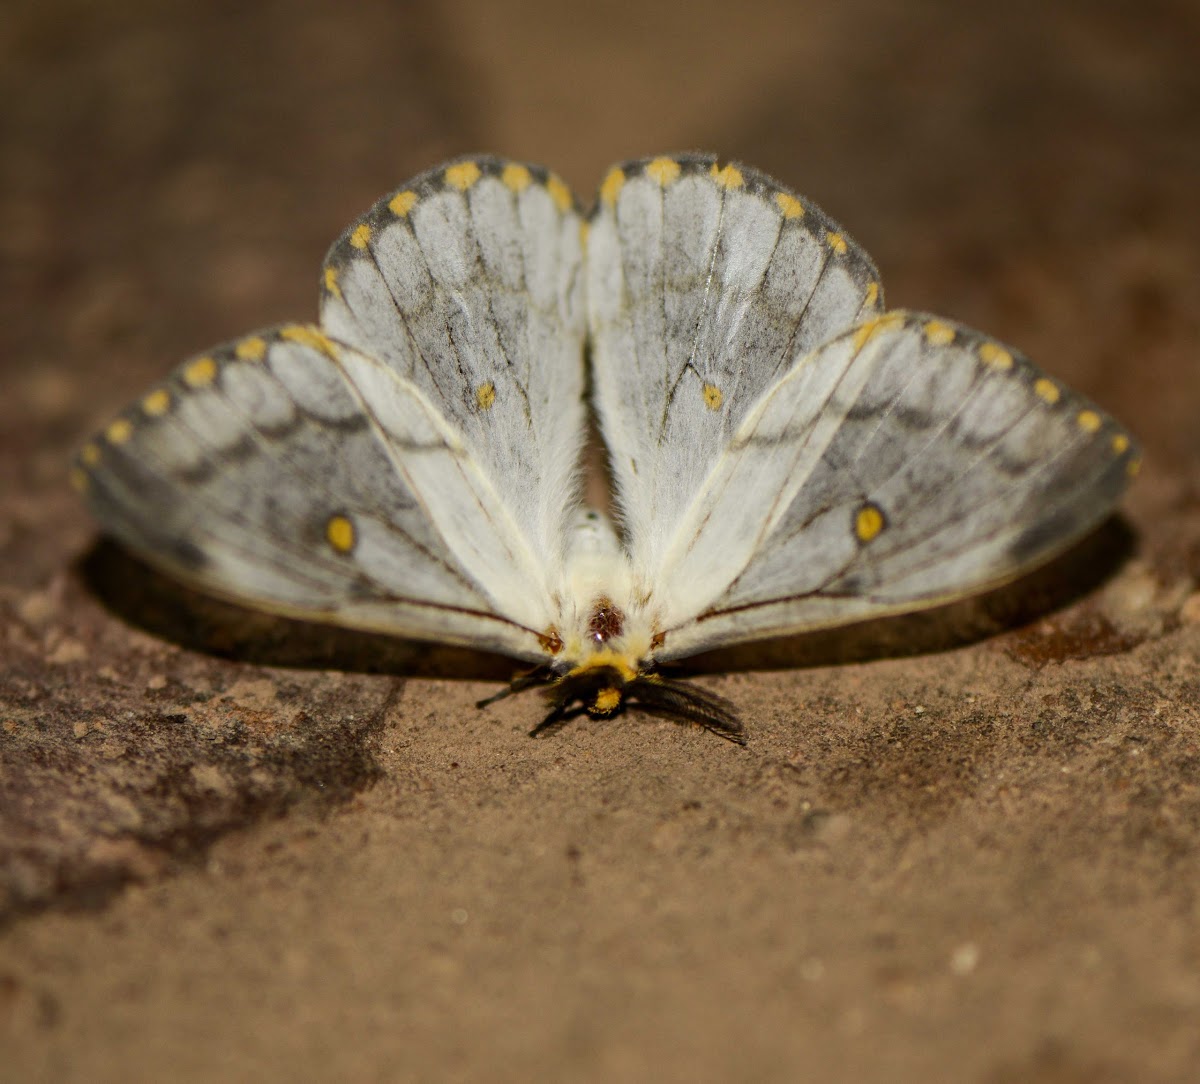 Apollo Moth